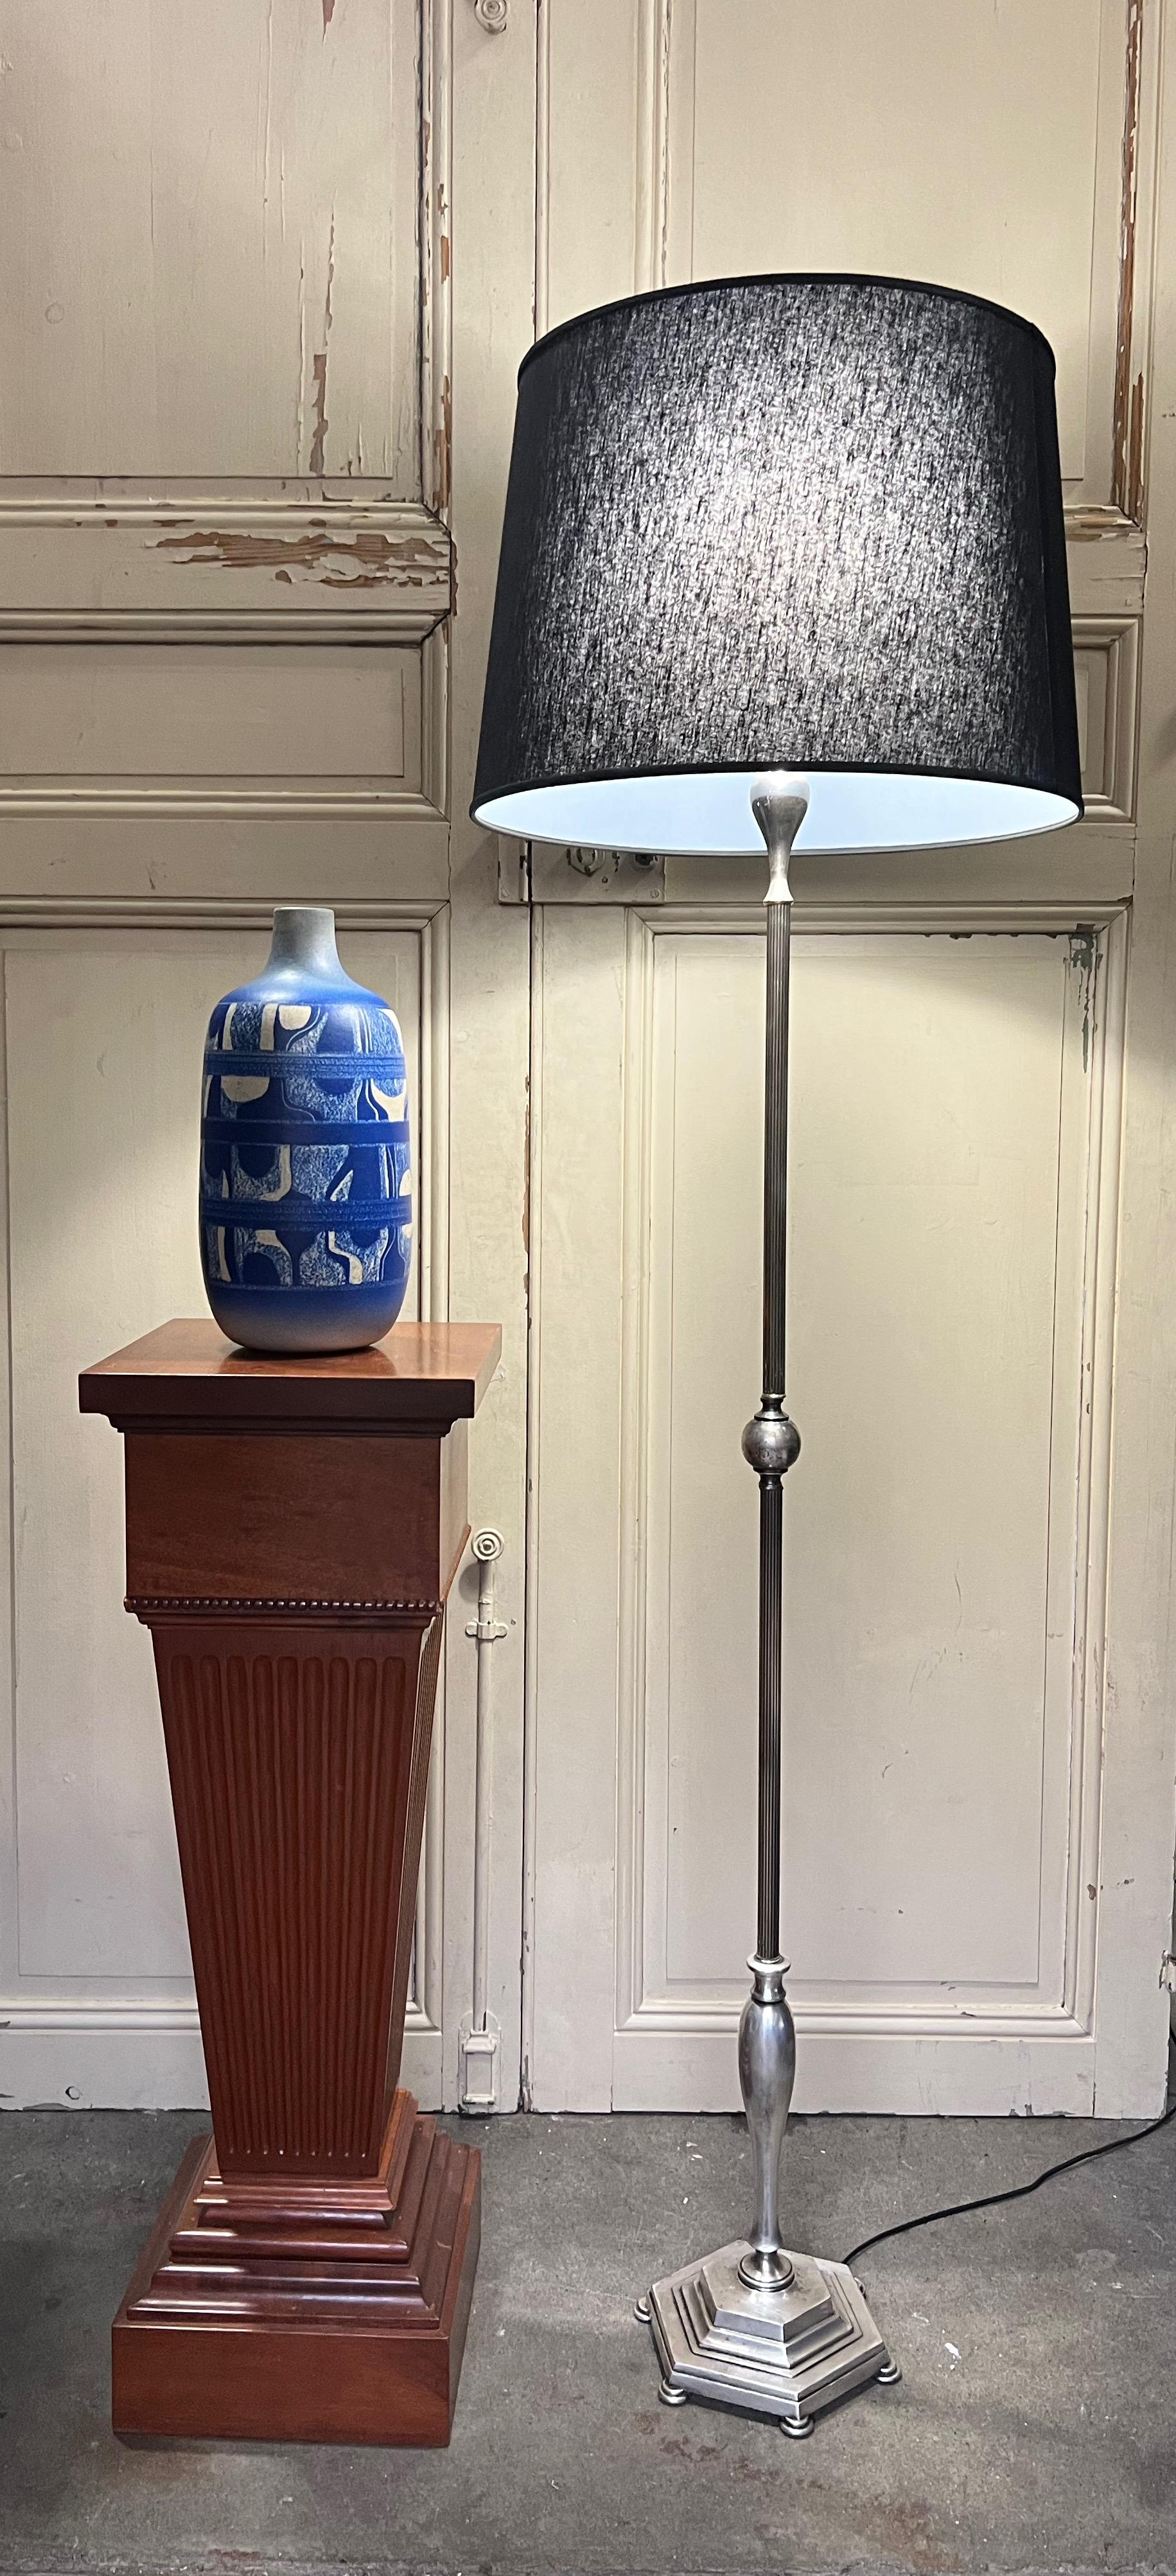 Diese französische versilberte Stehlampe aus den 1940er Jahren ist ein zeitloses Stück, das jedem Raum Vintage-Charme verleihen wird. Die von Hand polierte silberne Oberfläche, der sechseckige Fuß und der geriffelte Stiel mit der dekorativen Kugel